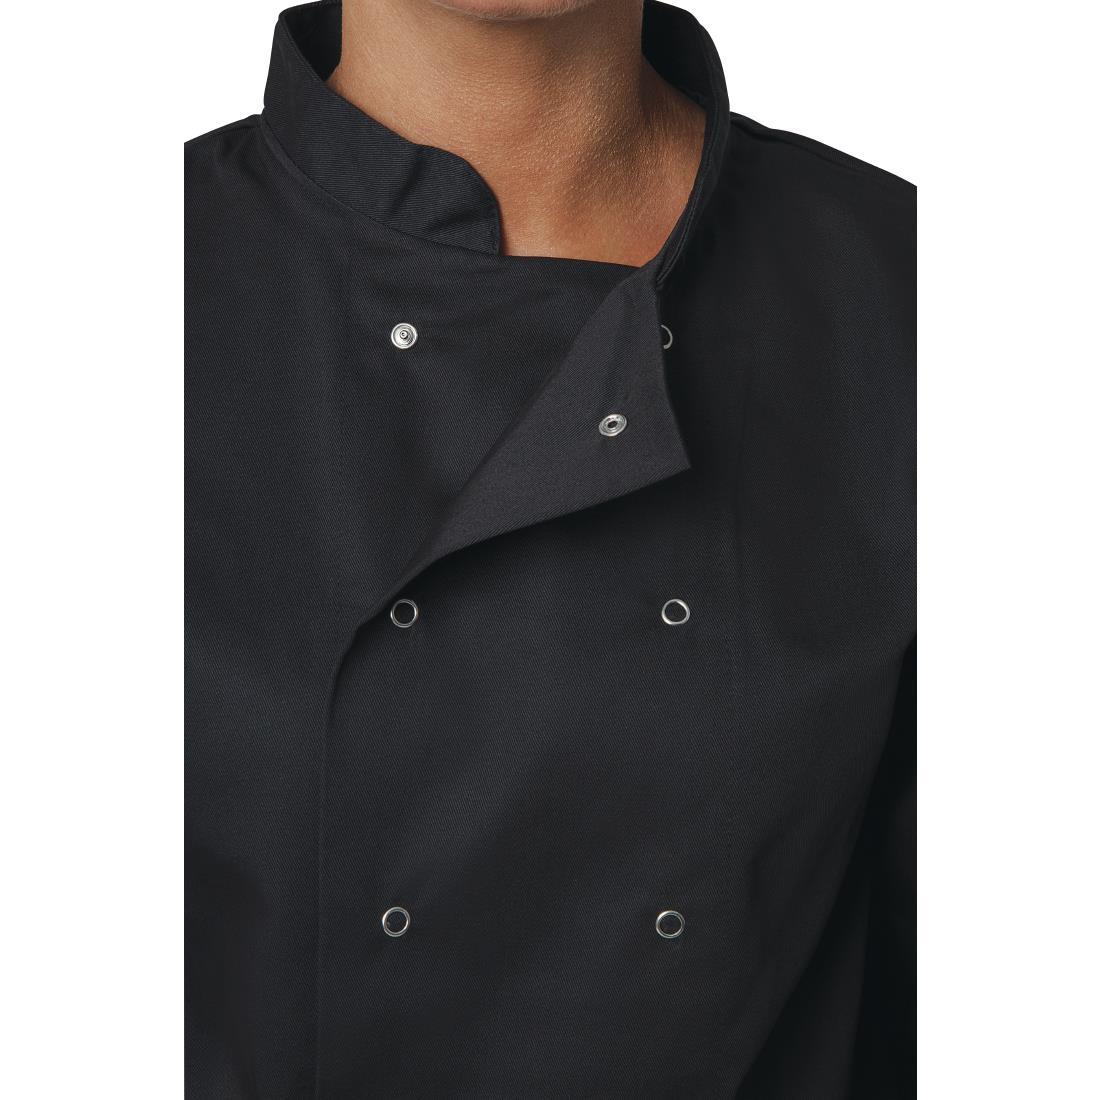 Whites Vegas Unisex Chefs Jacket Long Sleeve Black M - A438-M  - 4